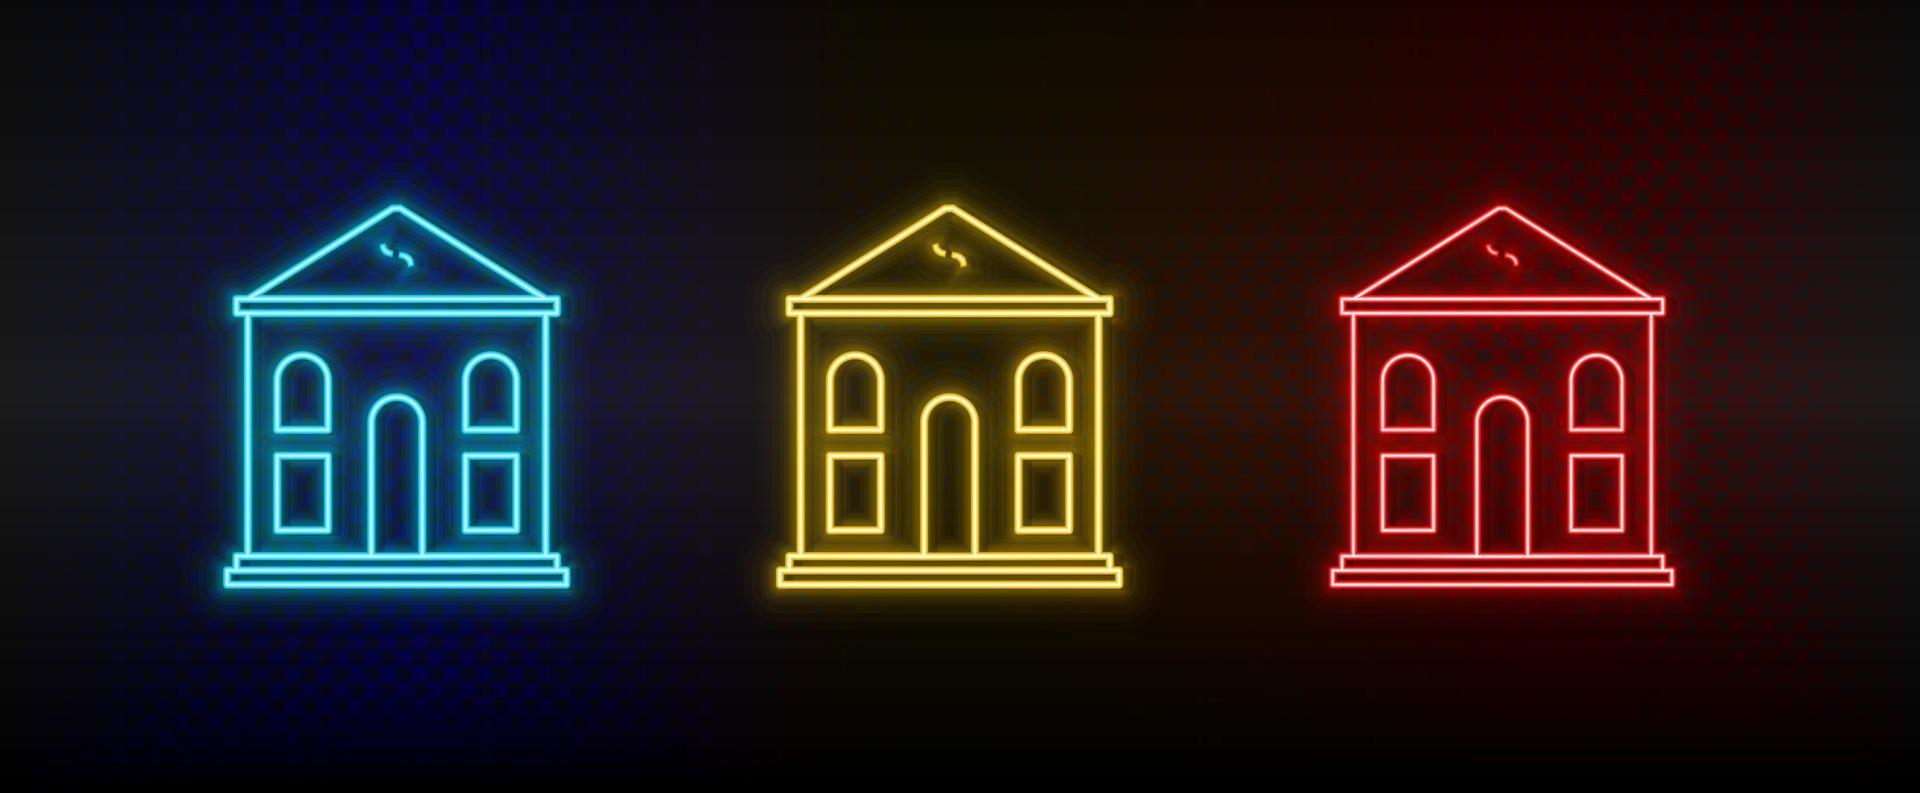 neon ikoner. byggnad. uppsättning av röd, blå, gul neon vektor ikon på mörk bakgrund